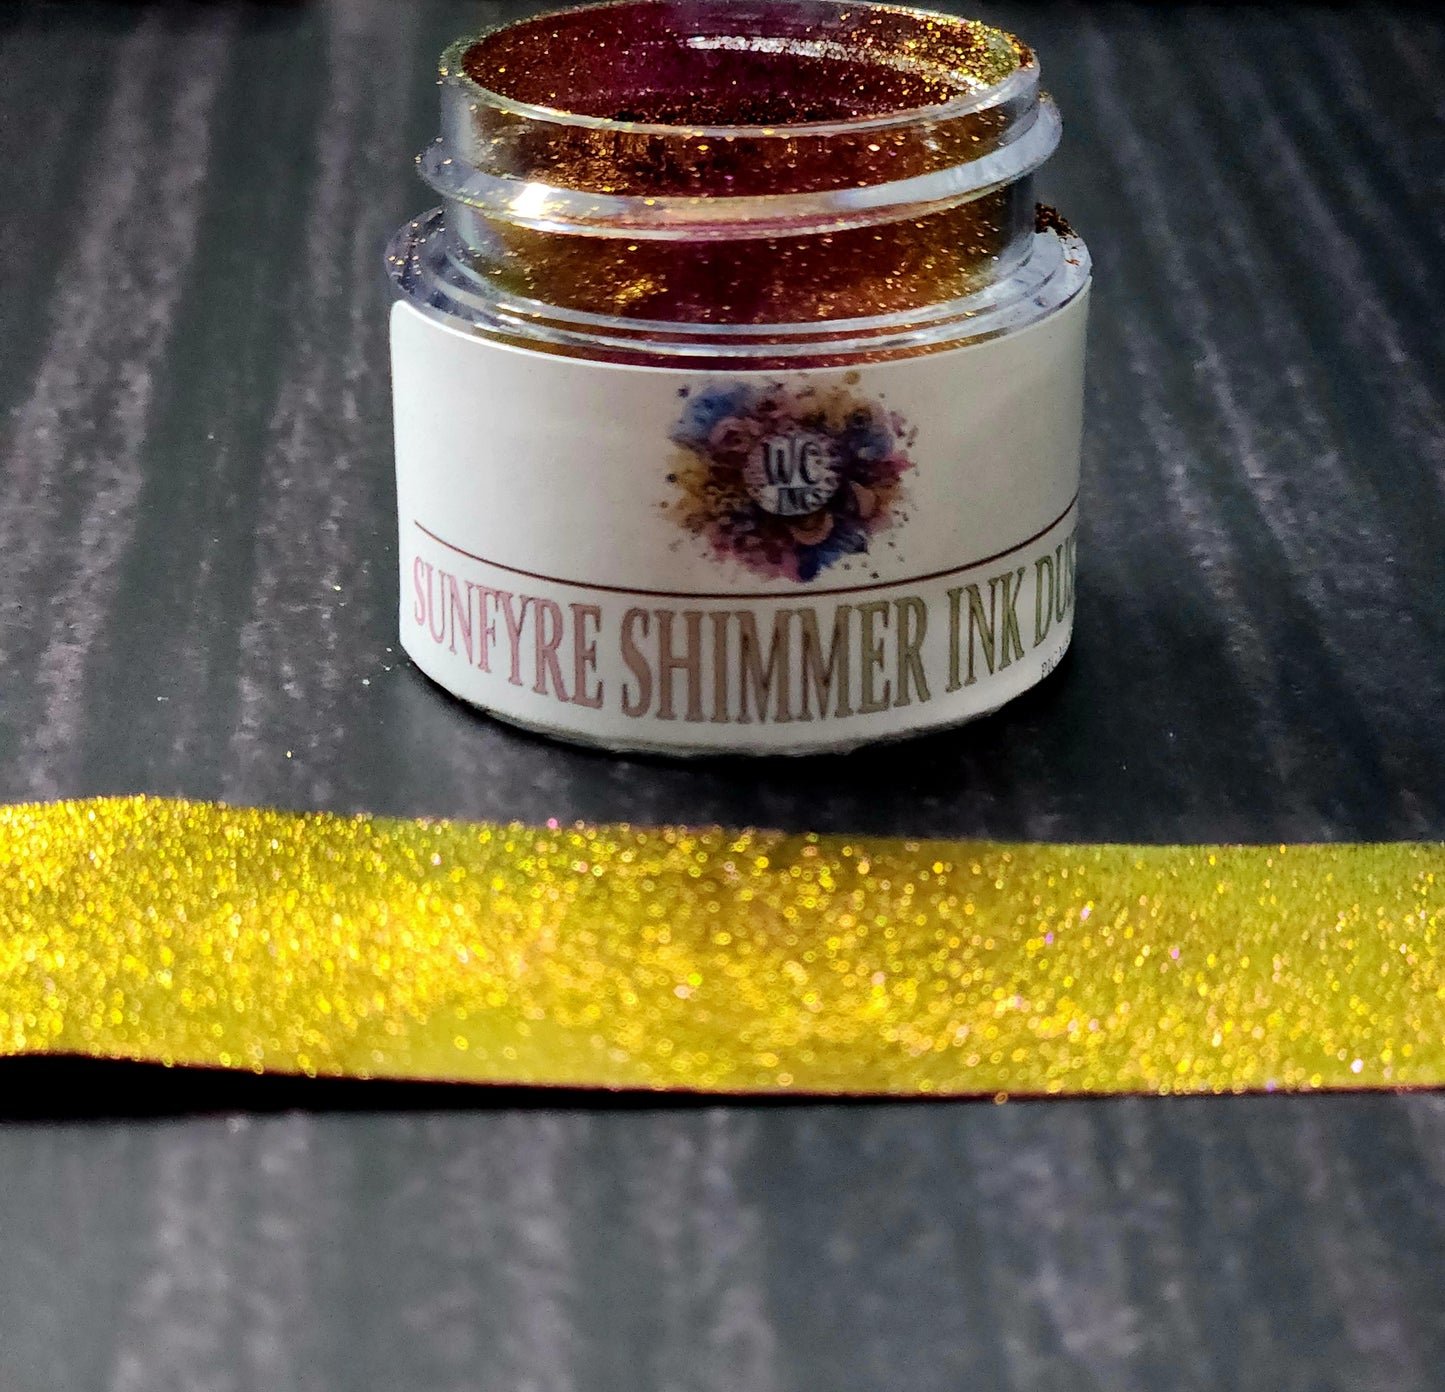 Sunfyre Shimmer Ink Dust